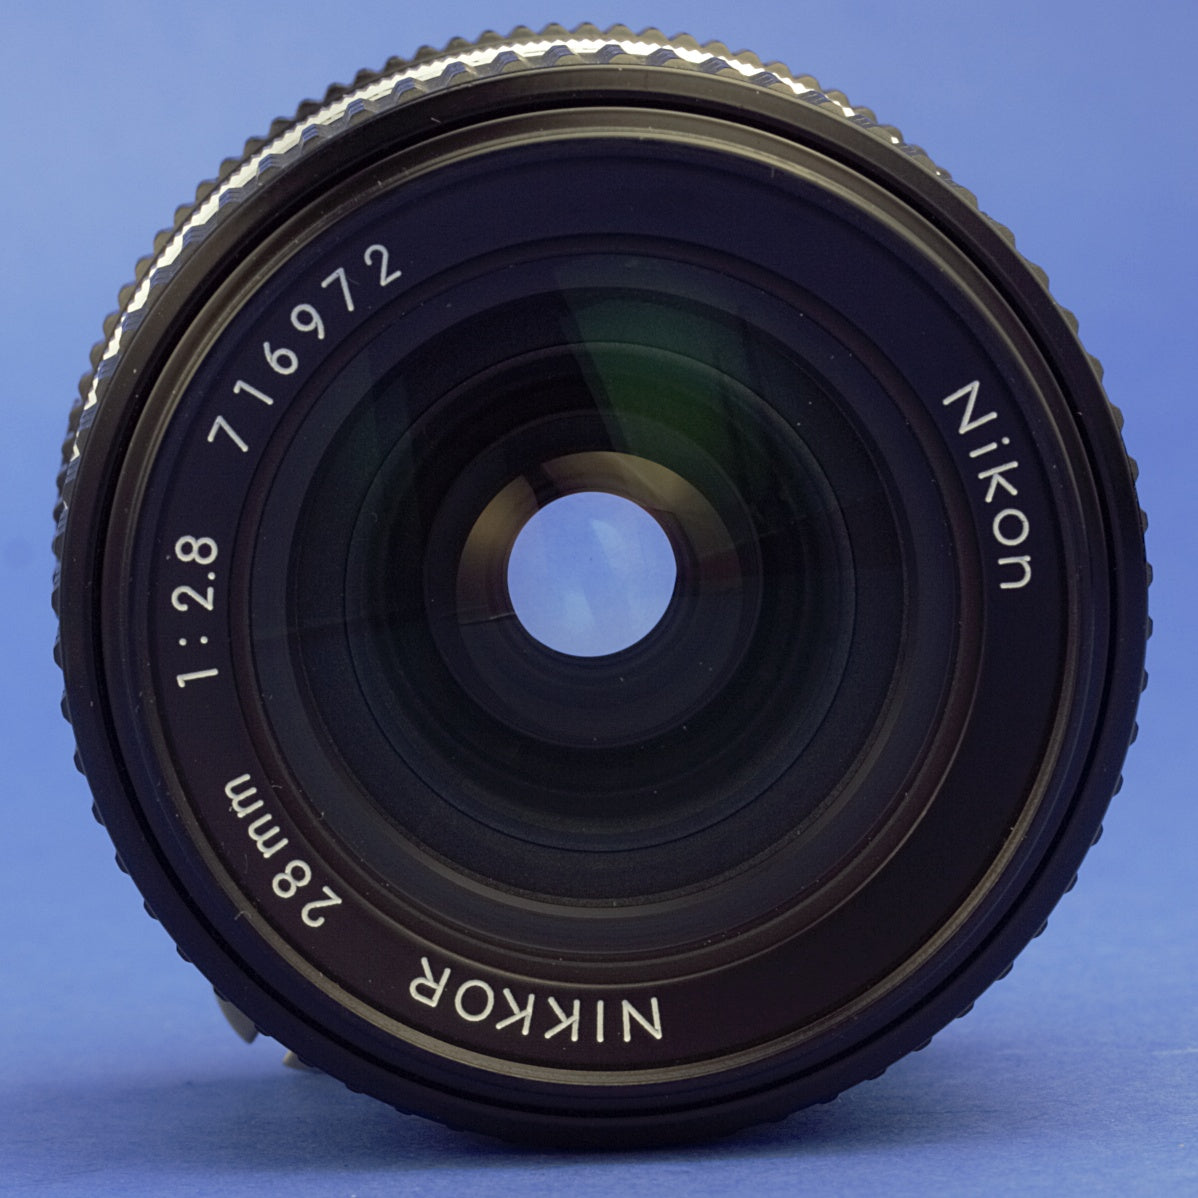 Nikon Nikkor 28mm 2.8 Ai-S Lens